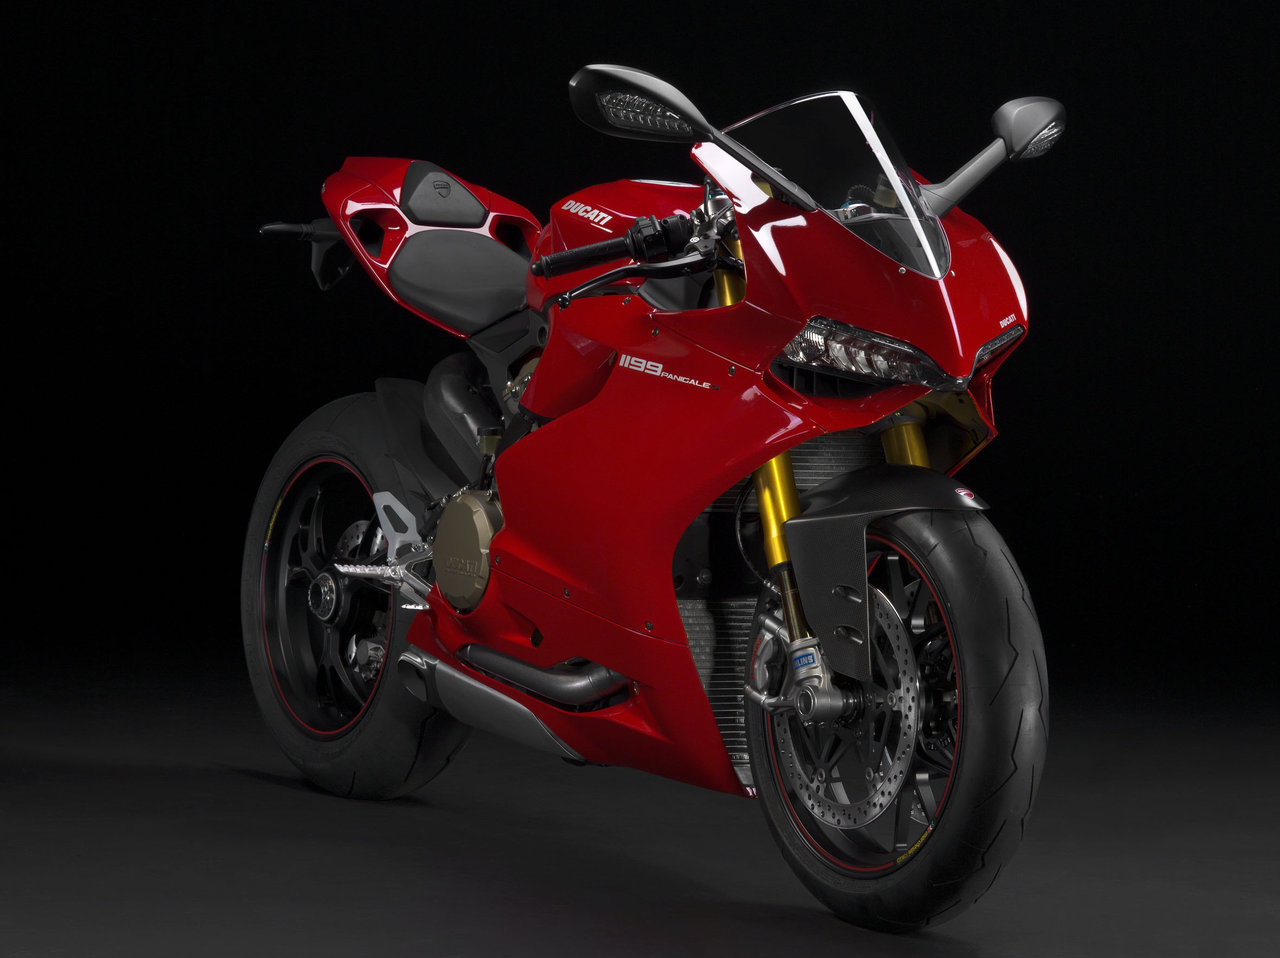 Listino Ducati Monster 696 Naked Media - image 13244_1 on https://moto.motori.net